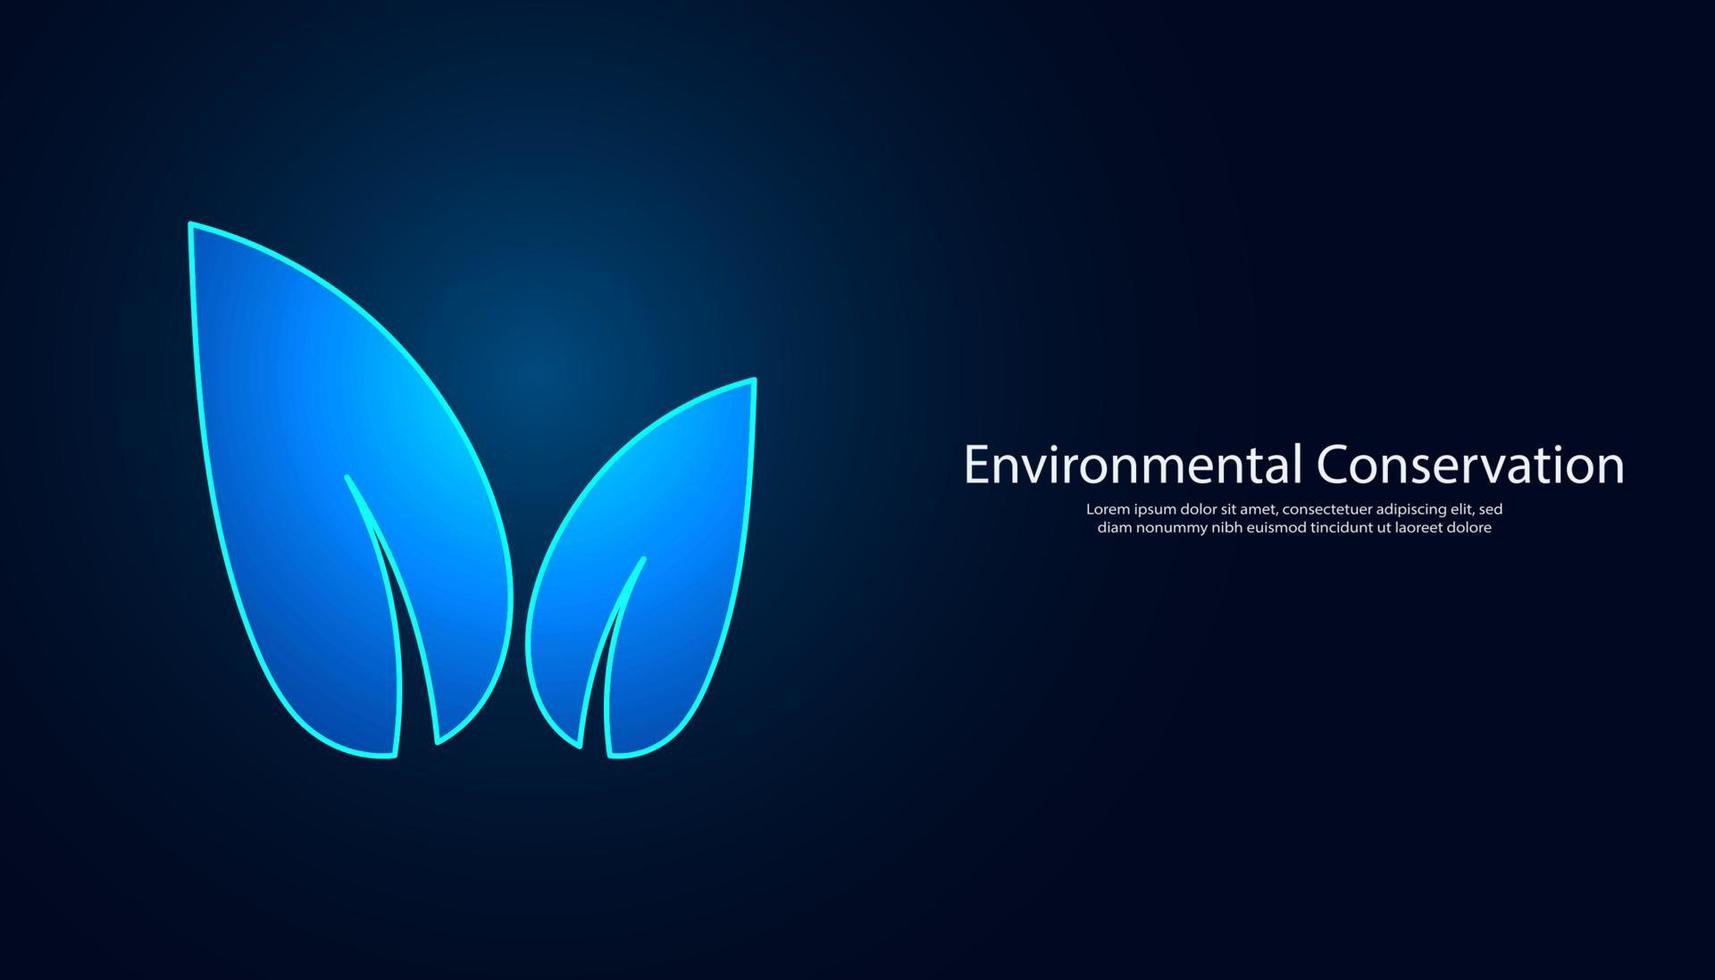 fondo abstracto concepto digital hoja símbolo protección del medio ambiente guardar tierra ahorro de energía moderno futurista fondo azul oscuro para texto vector